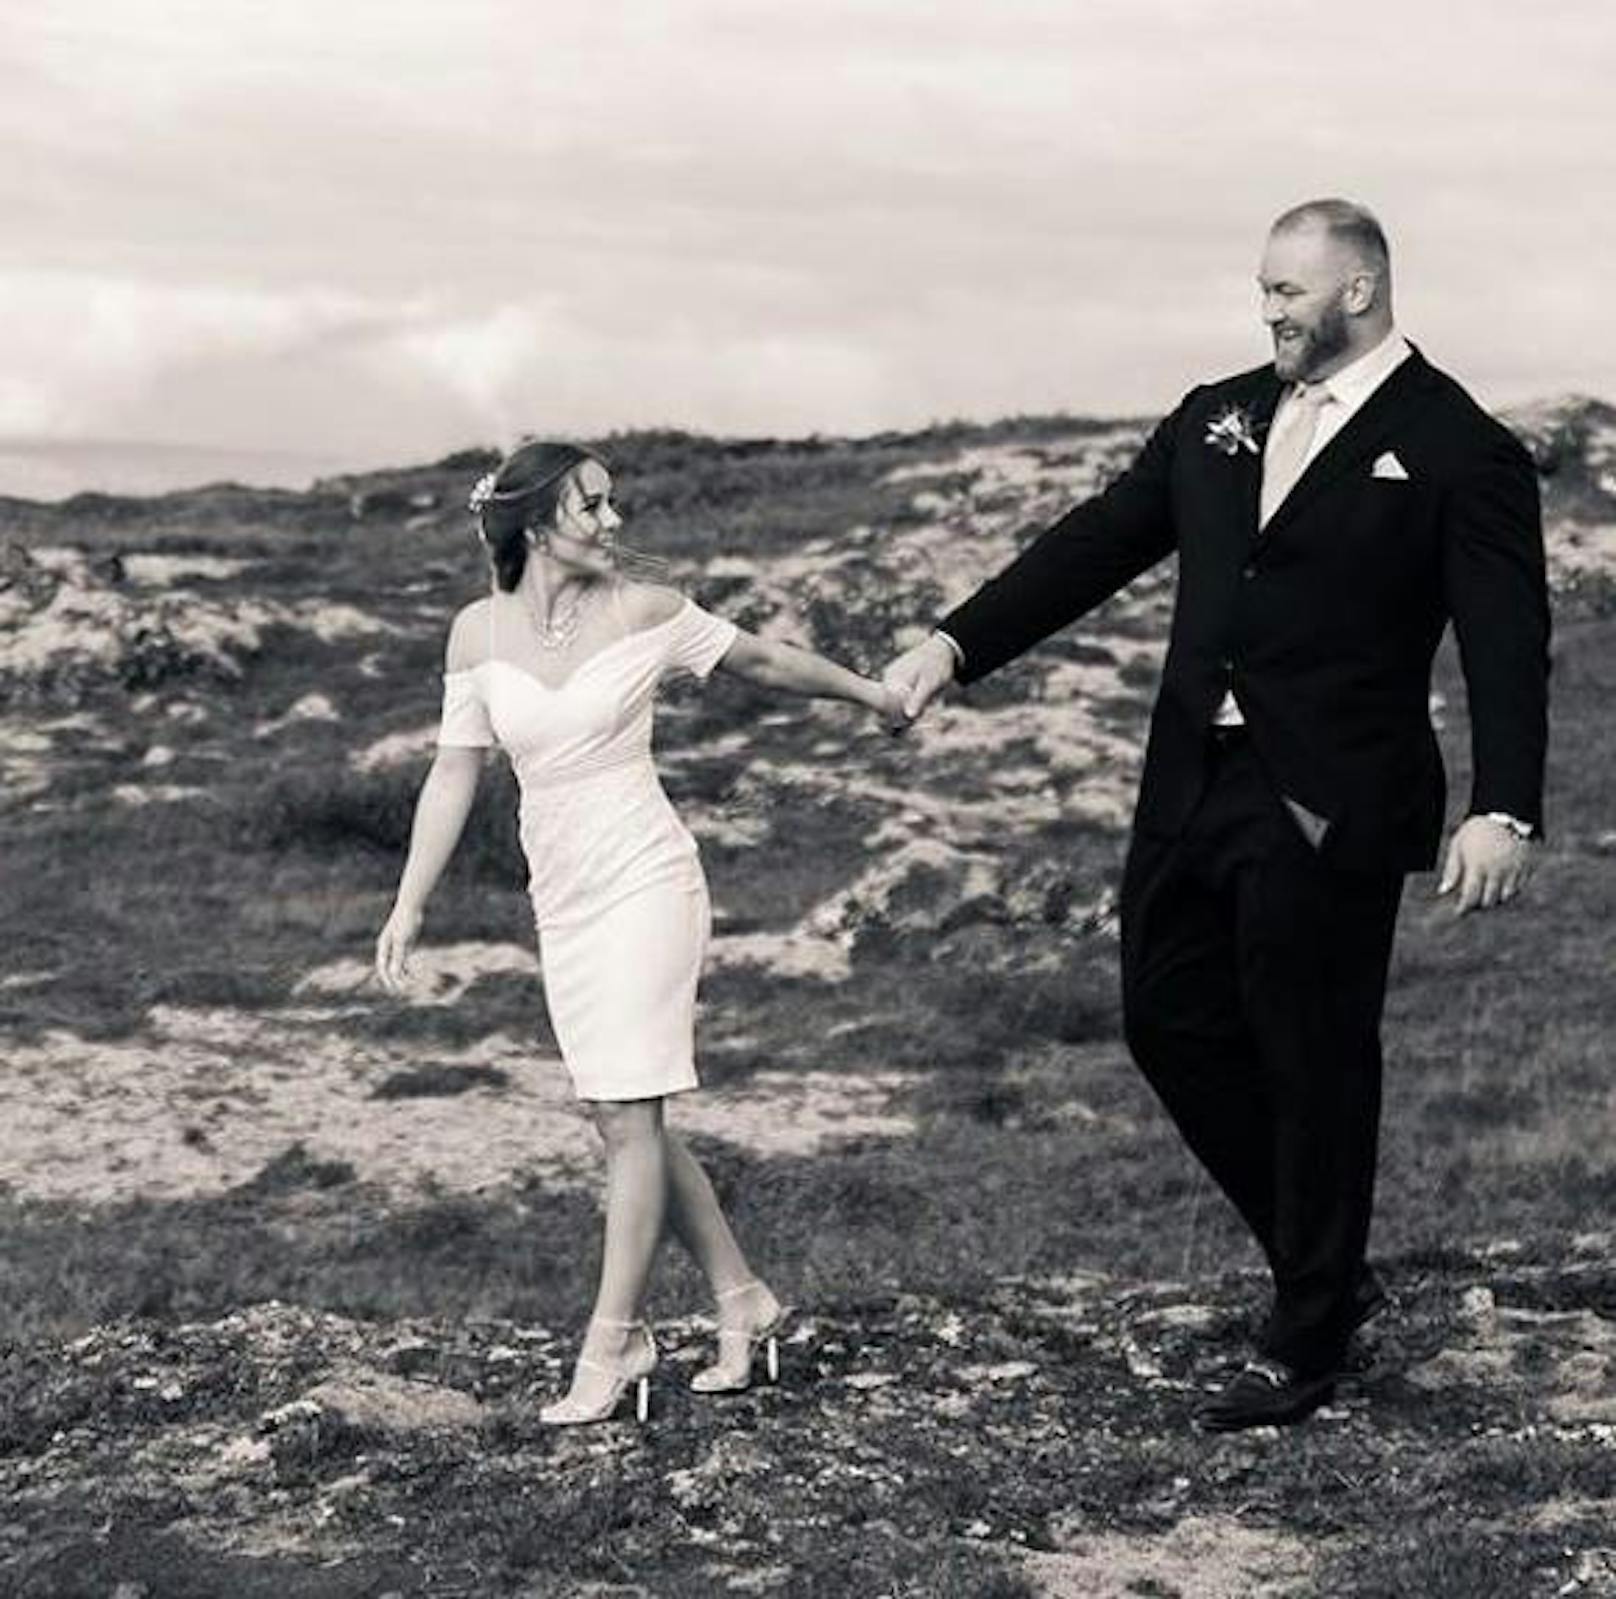 22.10.2018: Der Mountain hat seine Prophetin gefunden. Hafþór Júlíus Björnsson, einer der Stars aus "Game of Thrones" und nebenbei einer der stärksten Männer der Welt, hat seine Freundin Kelsey Henson geheiratet.